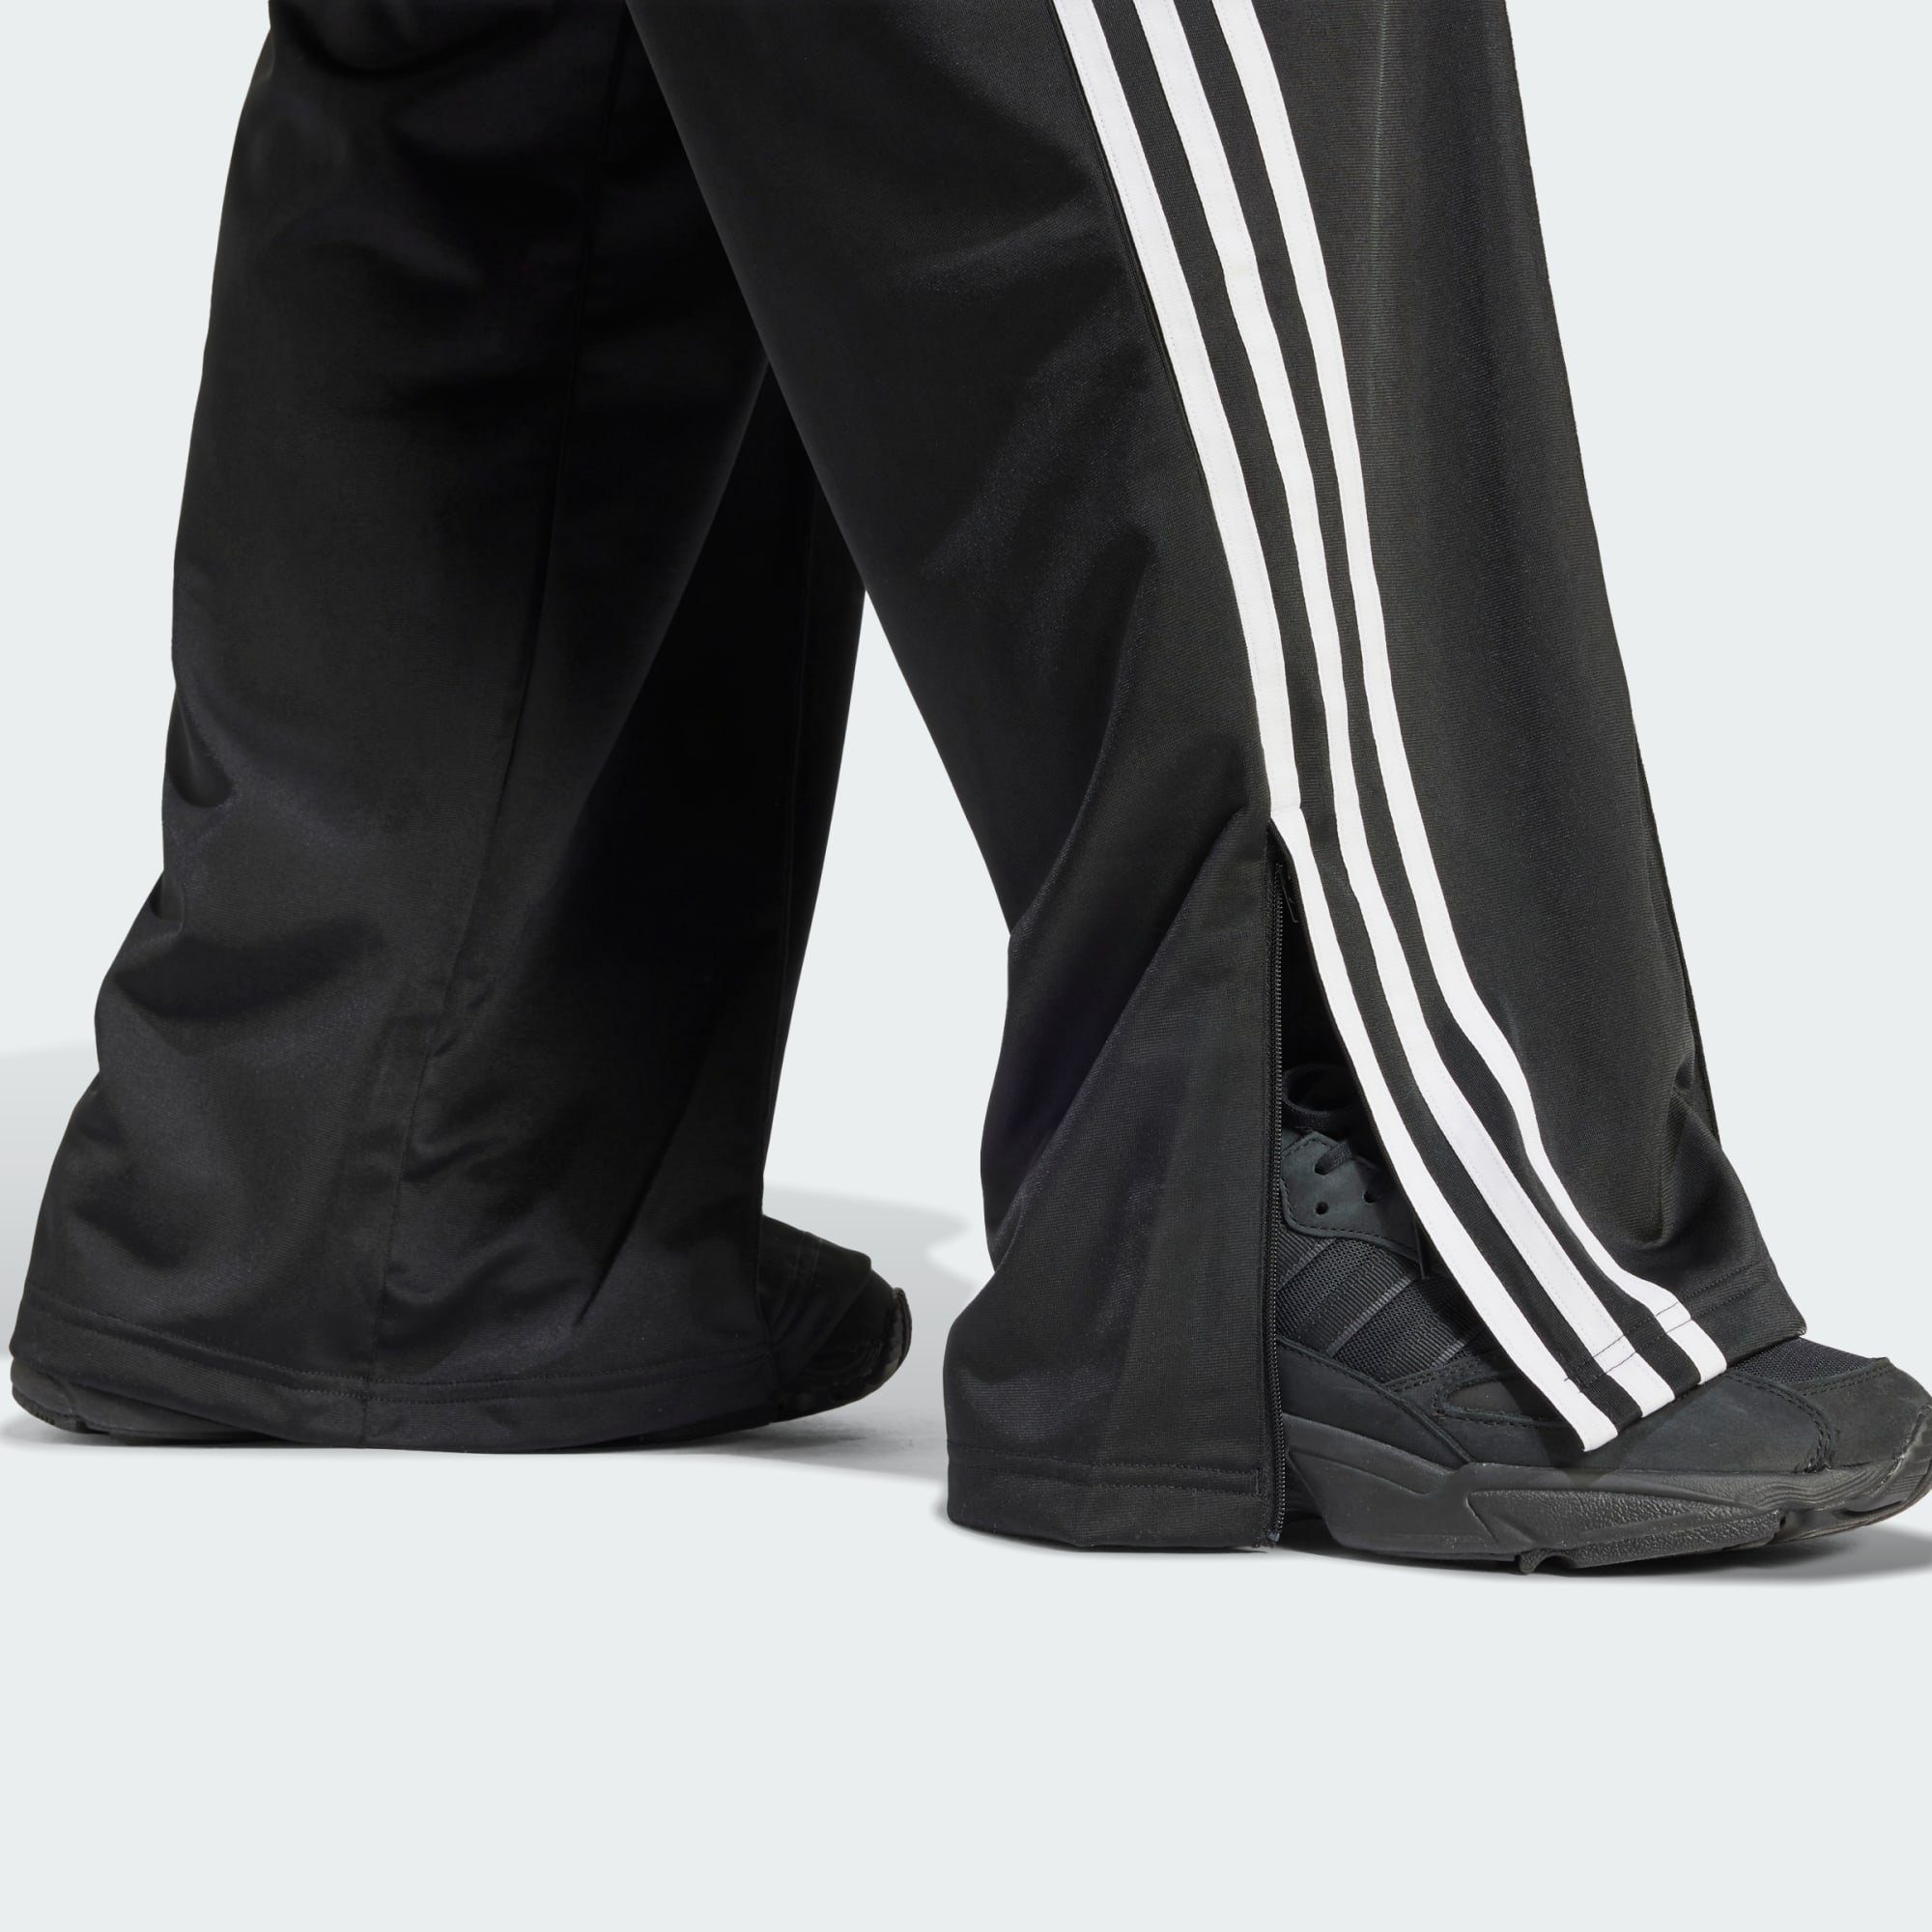 FIREBIRD Jogginghose Black TRAININGSHOSE Originals adidas LOOSE